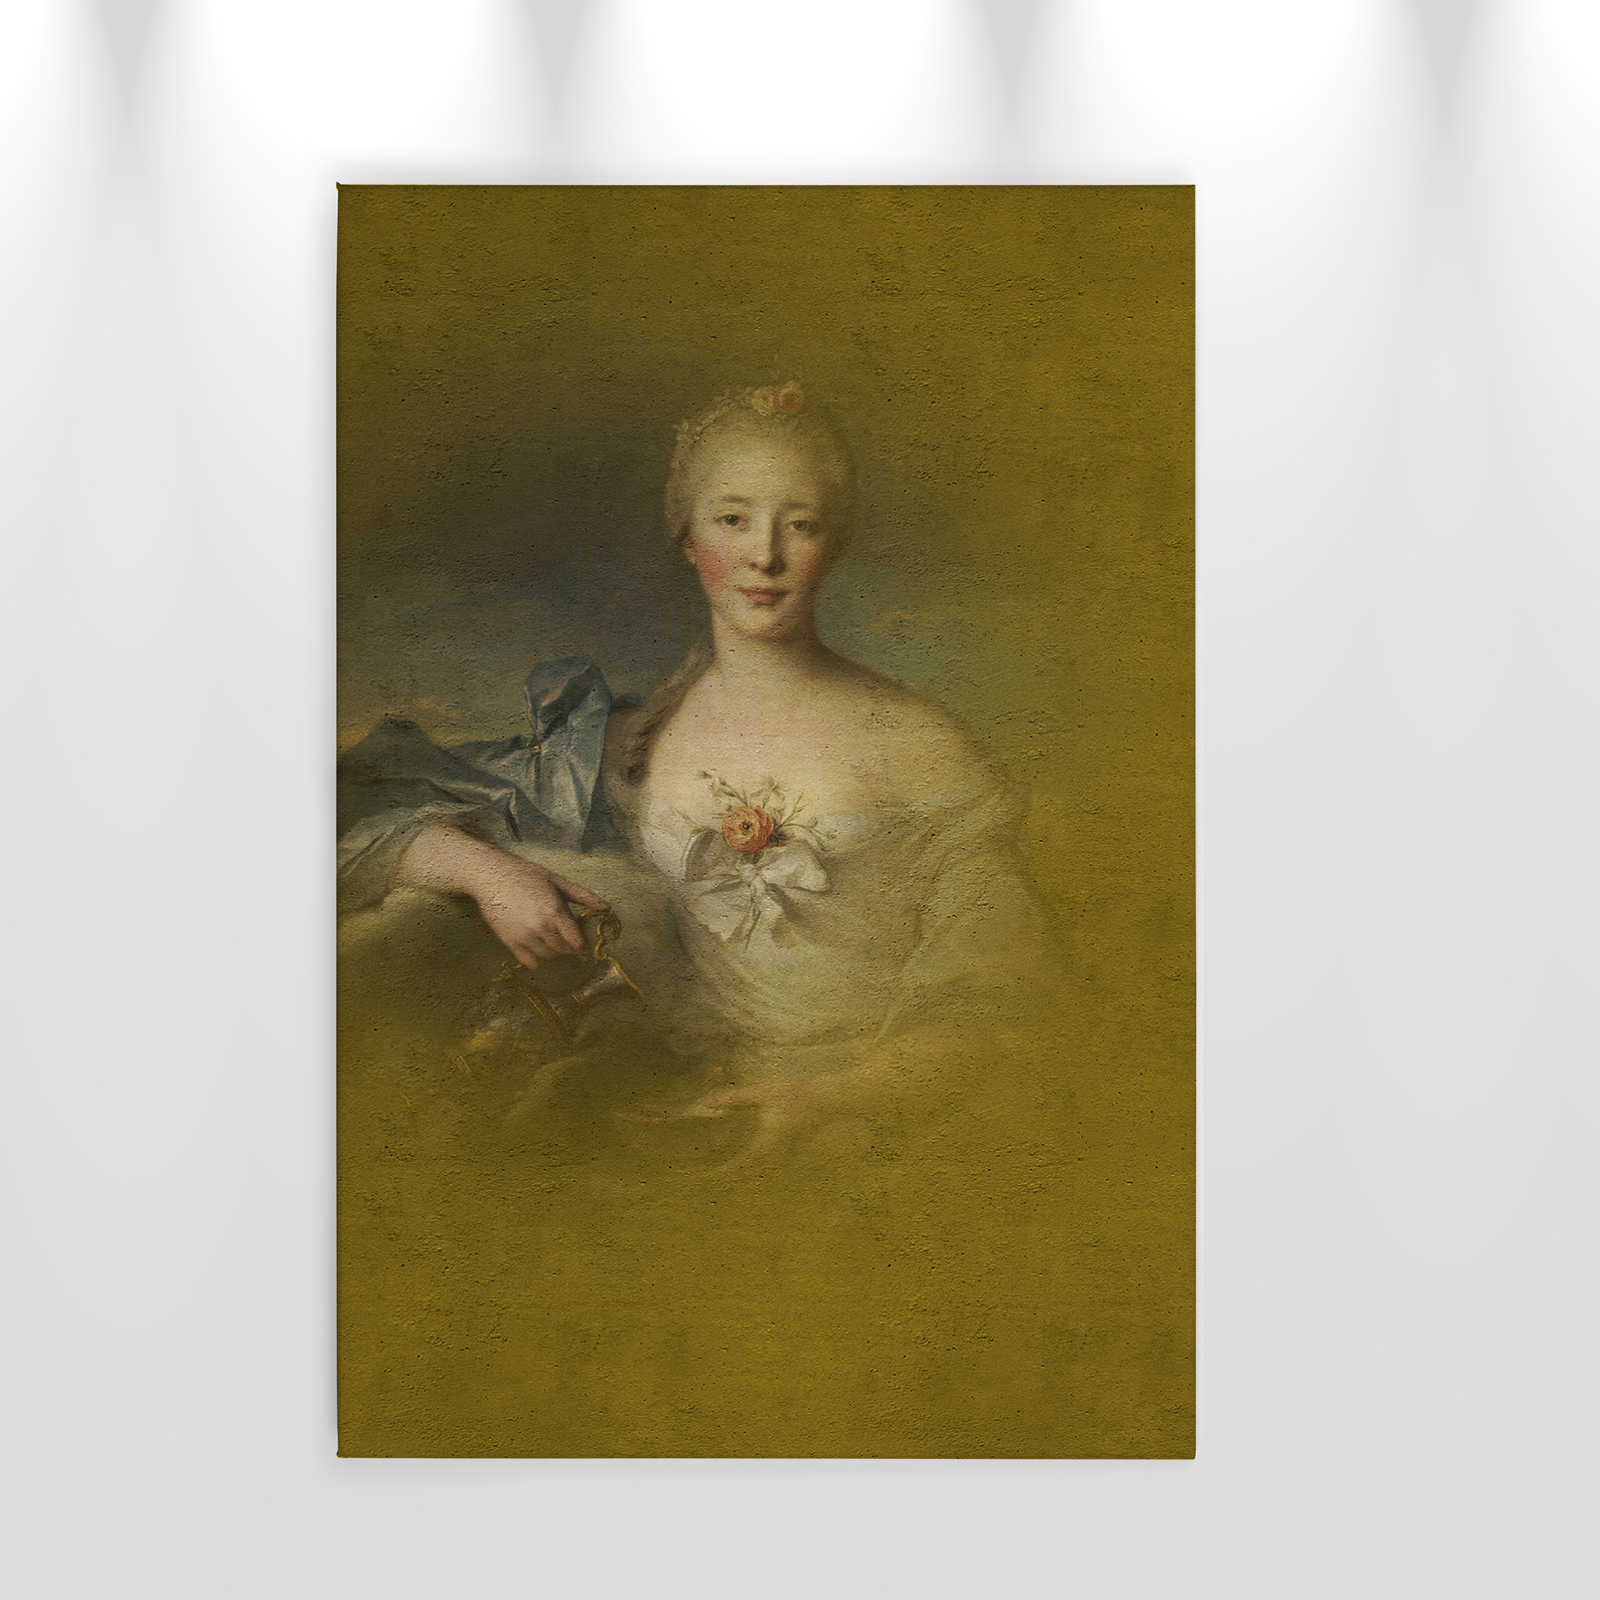             Canvas schilderij klassiek portret jonge dame - 0,60 m x 0,90 m
        